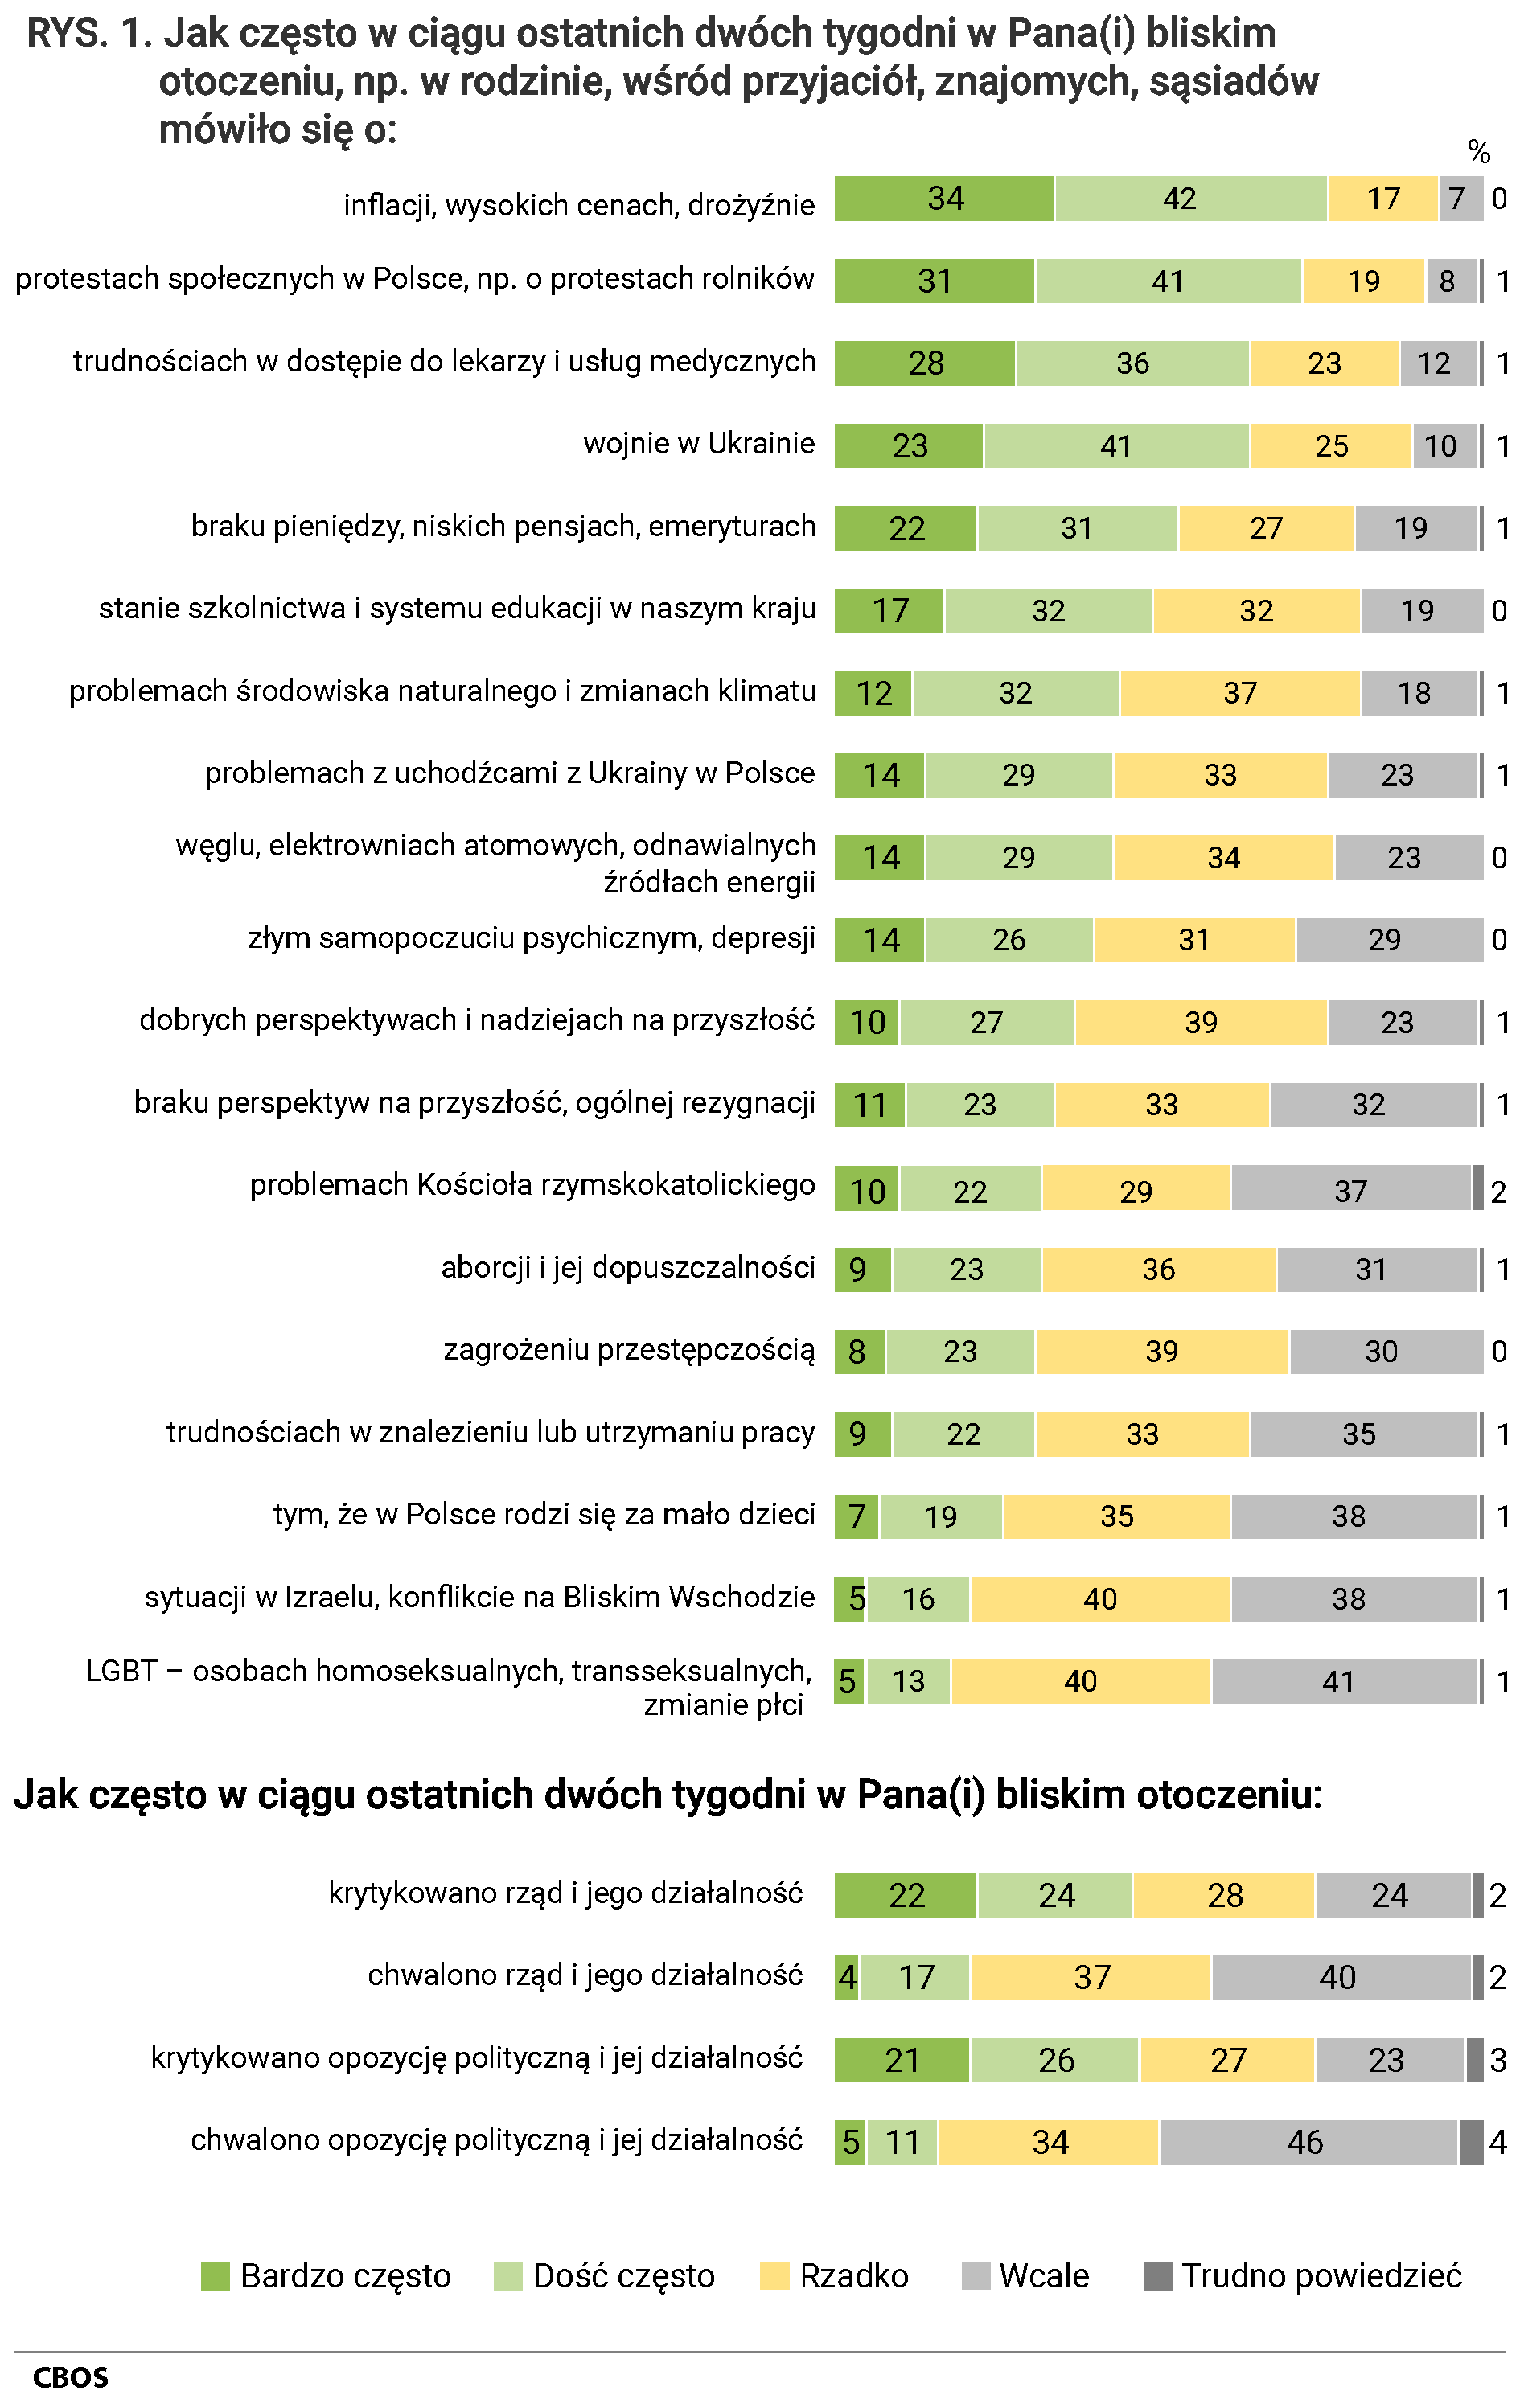 Rysunek 1 Jak często w ciągu ostatnich dwóch tygodni w Pana Pani bliskim otoczeniu, np. w rodzinie, wśród przyjaciół, znajomych, sąsiadów mówiło się: o inflacji, wysokich cenach, drożyźnie  (w procentach)  Wcale  (7) Rzadko (17) Dość często (42) Bardzo często (34) Trudno powiedzieć (0)  o protestach społecznych w Polsce, np. o protestach rolników (w procentach)  Wcale  (8) Rzadko (19) Dość często (41) Bardzo często (31) Trudno powiedzieć (1)  o trudnościach w dostępie do lekarzy i usług medycznych (w procentach)  Wcale  (12) Rzadko (23) Dość często (36) Bardzo często (28) Trudno powiedzieć (1)  o wojnie w Ukrainie (w procentach)  Wcale  (10) Rzadko (25) Dość często (41) Bardzo często (23) Trudno powiedzieć (1)  o braku pieniędzy, niskich pensjach, emeryturach (w procentach)  Wcale  (19) Rzadko (27) Dość często (31) Bardzo często (22) Trudno powiedzieć (1)  o stanie szkolnictwa i systemu edukacji w naszym kraju (w procentach)  Wcale  (19) Rzadko (32) Dość często (32) Bardzo często (17) Trudno powiedzieć (0)  o problemach środowiska naturalnego i zmianach klimatu (w procentach)  Wcale  (18) Rzadko (37) Dość często (32) Bardzo często (12) Trudno powiedzieć (1)  o problemach z uchodźcami z Ukrainy w Polsce (w procentach)  Wcale  (23) Rzadko (33) Dość często (29) Bardzo często (14) Trudno powiedzieć (1)  o węglu, elektrowniach atomowych, odnawialnych źródłach energii (w procentach)  Wcale  (23) Rzadko (34) Dość często (29) Bardzo często (14) Trudno powiedzieć (0)  o złym samopoczuciu psychicznym, depresji (w procentach)  Wcale  (29) Rzadko (31) Dość często (26) Bardzo często (14) Trudno powiedzieć (0)  o dobrych perspektywach i nadziejach na przyszłość (w procentach)  Wcale  (23) Rzadko (39) Dość często (27) Bardzo często (10) Trudno powiedzieć (1)  o braku perspektyw na przyszłość, ogólnej rezygnacji (w procentach)  Wcale  (32) Rzadko (33) Dość często (23) Bardzo często (11) Trudno powiedzieć (1)  o problemach Kościoła rzymskokatolickiego (w procentach)  Wcale  (37) Rzadko (29) Dość często (22) Bardzo często (10) Trudno powiedzieć (2)  o aborcji i jej dopuszczalności (w procentach)  Wcale  (31) Rzadko (36) Dość często (23) Bardzo często (9) Trudno powiedzieć (1)  o zagrożeniu przestępczością (w procentach)  Wcale  (30) Rzadko (39) Dość często (23) Bardzo często (8) Trudno powiedzieć (0)  o trudnościach w znalezieniu lub utrzymaniu pracy (w procentach)  Wcale  (35) Rzadko (33) Dość często (22) Bardzo często (9) Trudno powiedzieć (1)  o tym, że w Polsce rodzi się za mało dzieci (w procentach)  Wcale  (38) Rzadko (35) Dość często (19) Bardzo często (7) Trudno powiedzieć (1)  o sytuacji w Izraelu, konflikcie na Bliskim Wschodzie (w procentach)  Wcale  (38) Rzadko (40) Dość często (16) Bardzo często (5) Trudno powiedzieć (1)  o LGBT – osobach homoseksualnych, transseksualnych, zmianie płci (w procentach)  Wcale  (41) Rzadko (40) Dość często (13) Bardzo często (5) Trudno powiedzieć (1) A jak często w ciągu ostatnich dwóch tygodni w Pana Pani bliskim otoczeniu: (w procentach) krytykowano rząd i jego działalność (w procentach)  Wcale  (24) Rzadko (28) Dość często (24) Bardzo często (22) Trudno powiedzieć (2) chwalono rząd i jego działalność (w procentach)  Wcale  (40) Rzadko (37) Dość często (17) Bardzo często (4) Trudno powiedzieć (2) krytykowano opozycję polityczną i jej działalność (w procentach)  Wcale  (23) Rzadko (27) Dość często (26) Bardzo często (21) Trudno powiedzieć (3) chwalono opozycję polityczną i jej działalność (w procentach)  Wcale  (46) Rzadko (34) Dość często (11) Bardzo często (5) Trudno powiedzieć (4)